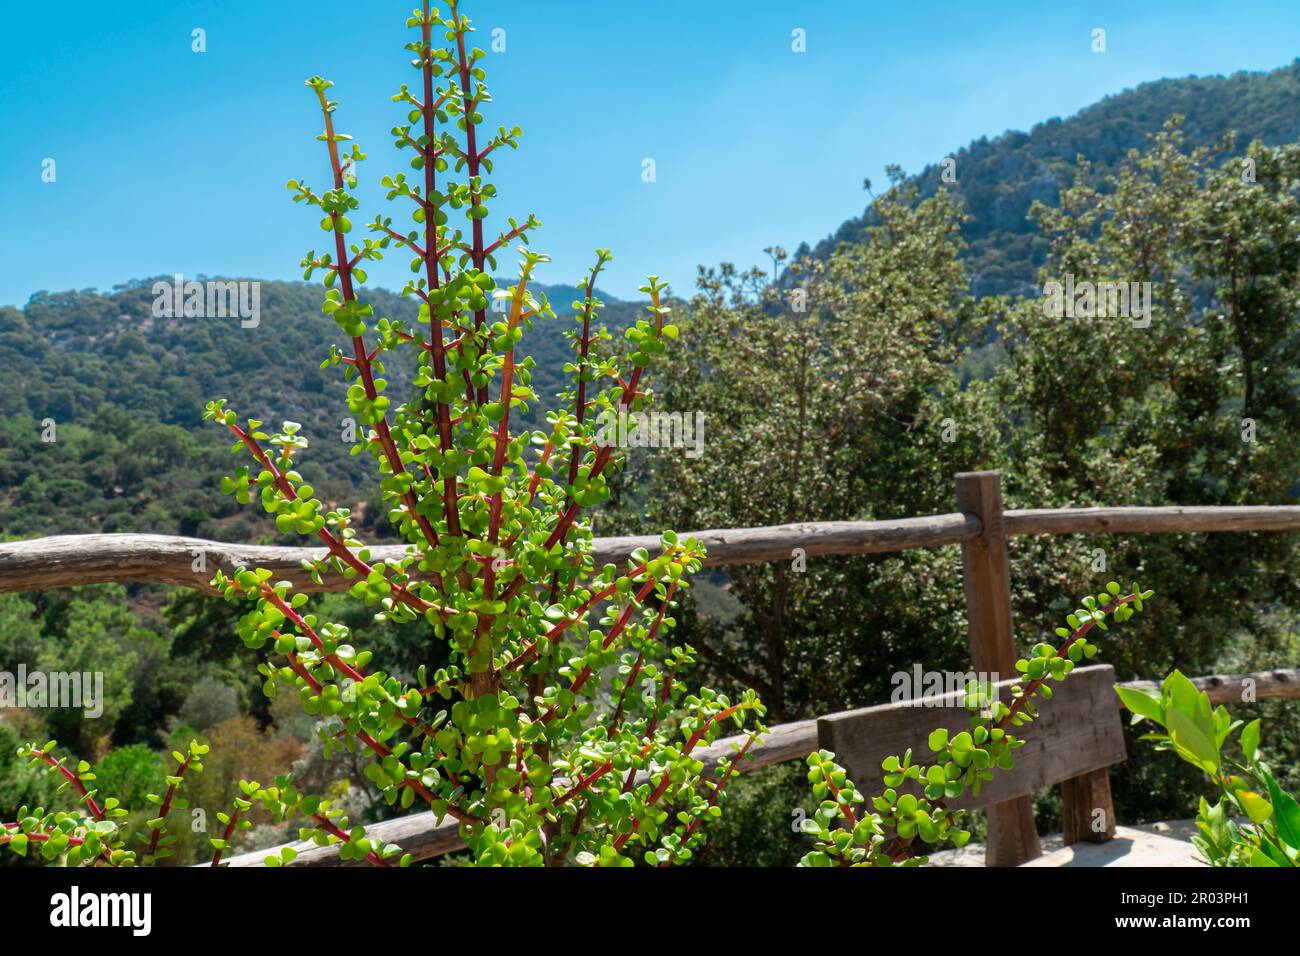 Grüne Pflanze mit rotem Stiel im Garten. Kleine grüne Pflanzenblätter auf grünen Hügeln und Bäumen Stockfoto